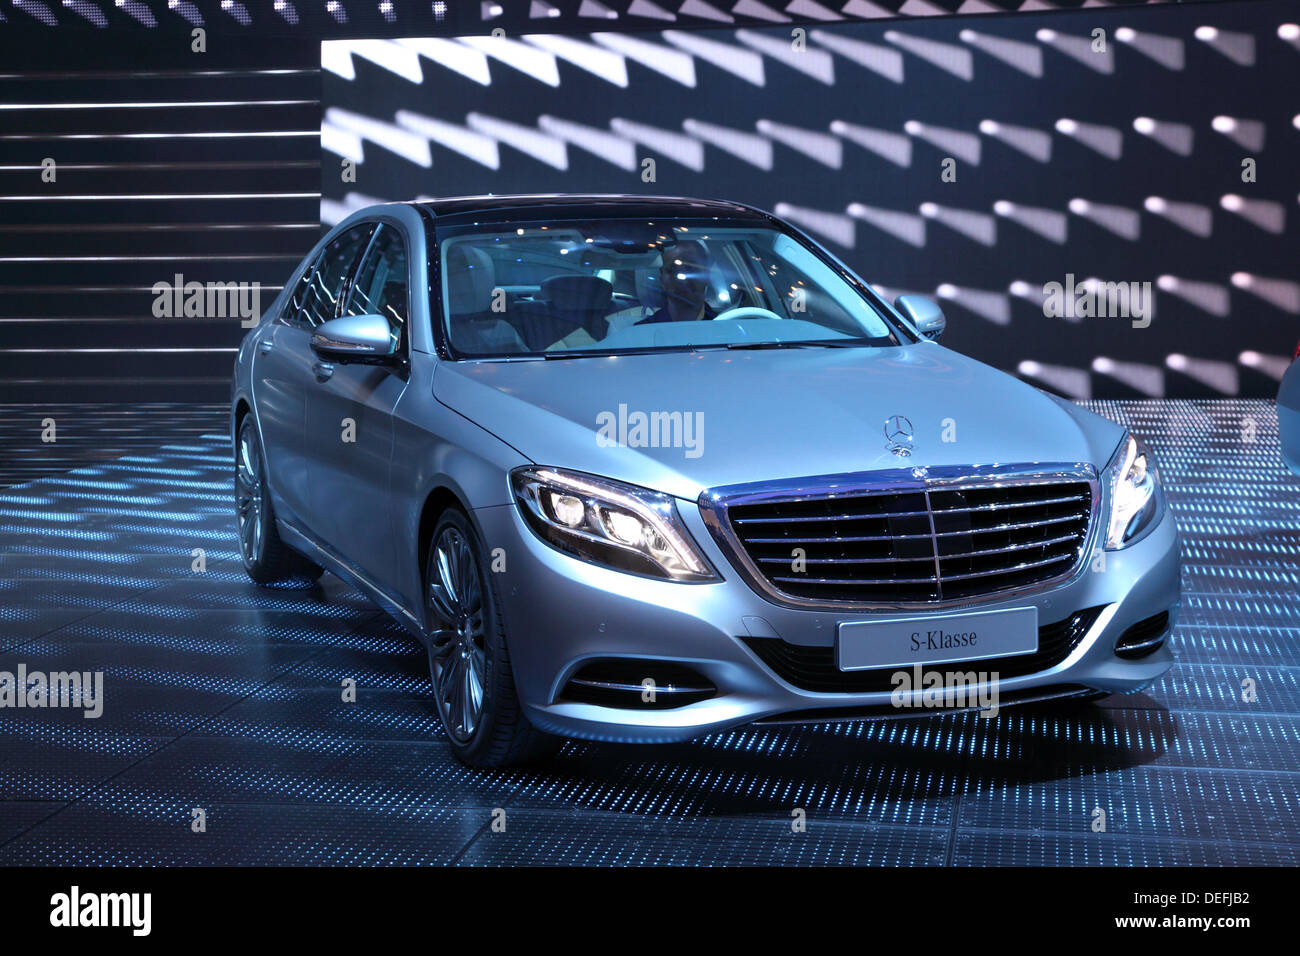 Mercedes benz s class -Fotos und -Bildmaterial in hoher Auflösung - Seite 2  - Alamy